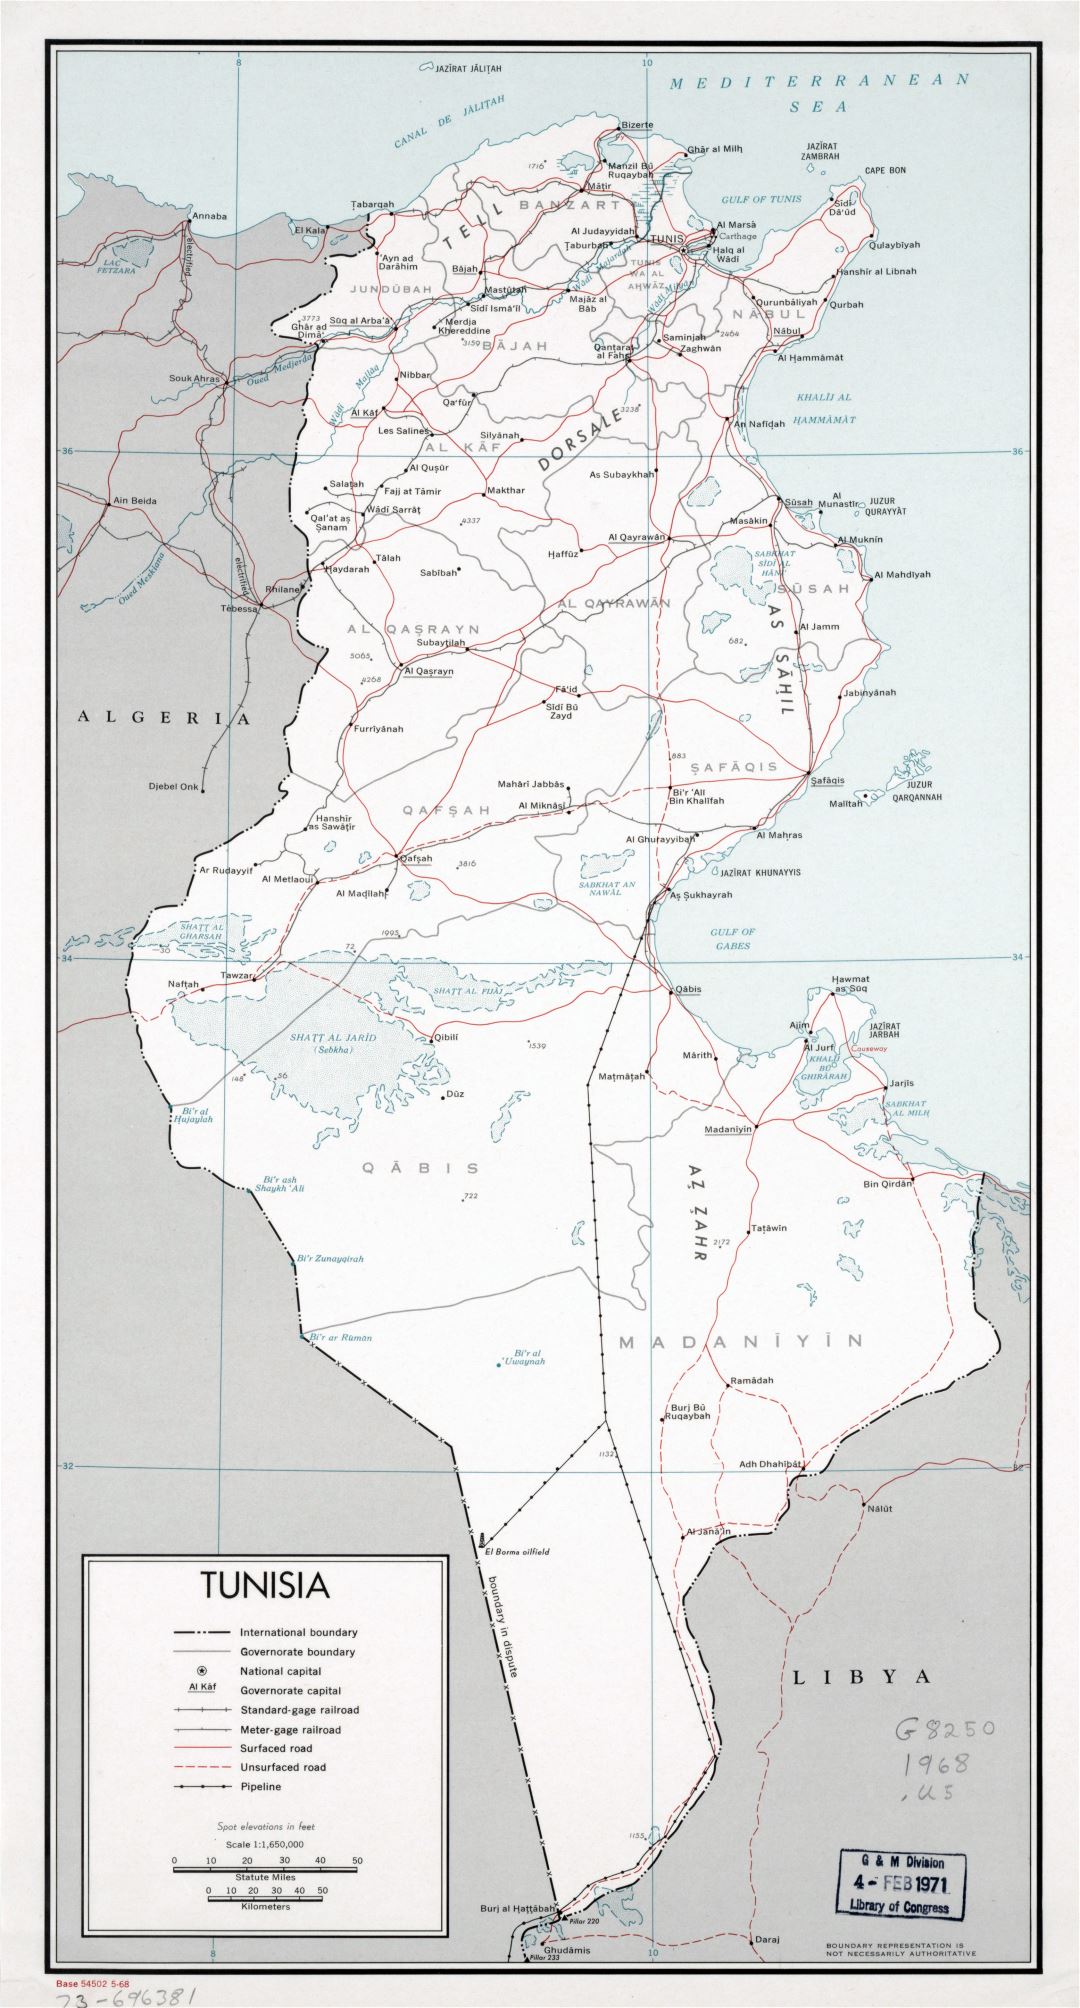 Крупномасштабная политическая и административная карта Туниса с дорогами, железными дорогами, трубопроводами и крупными городами - 1968